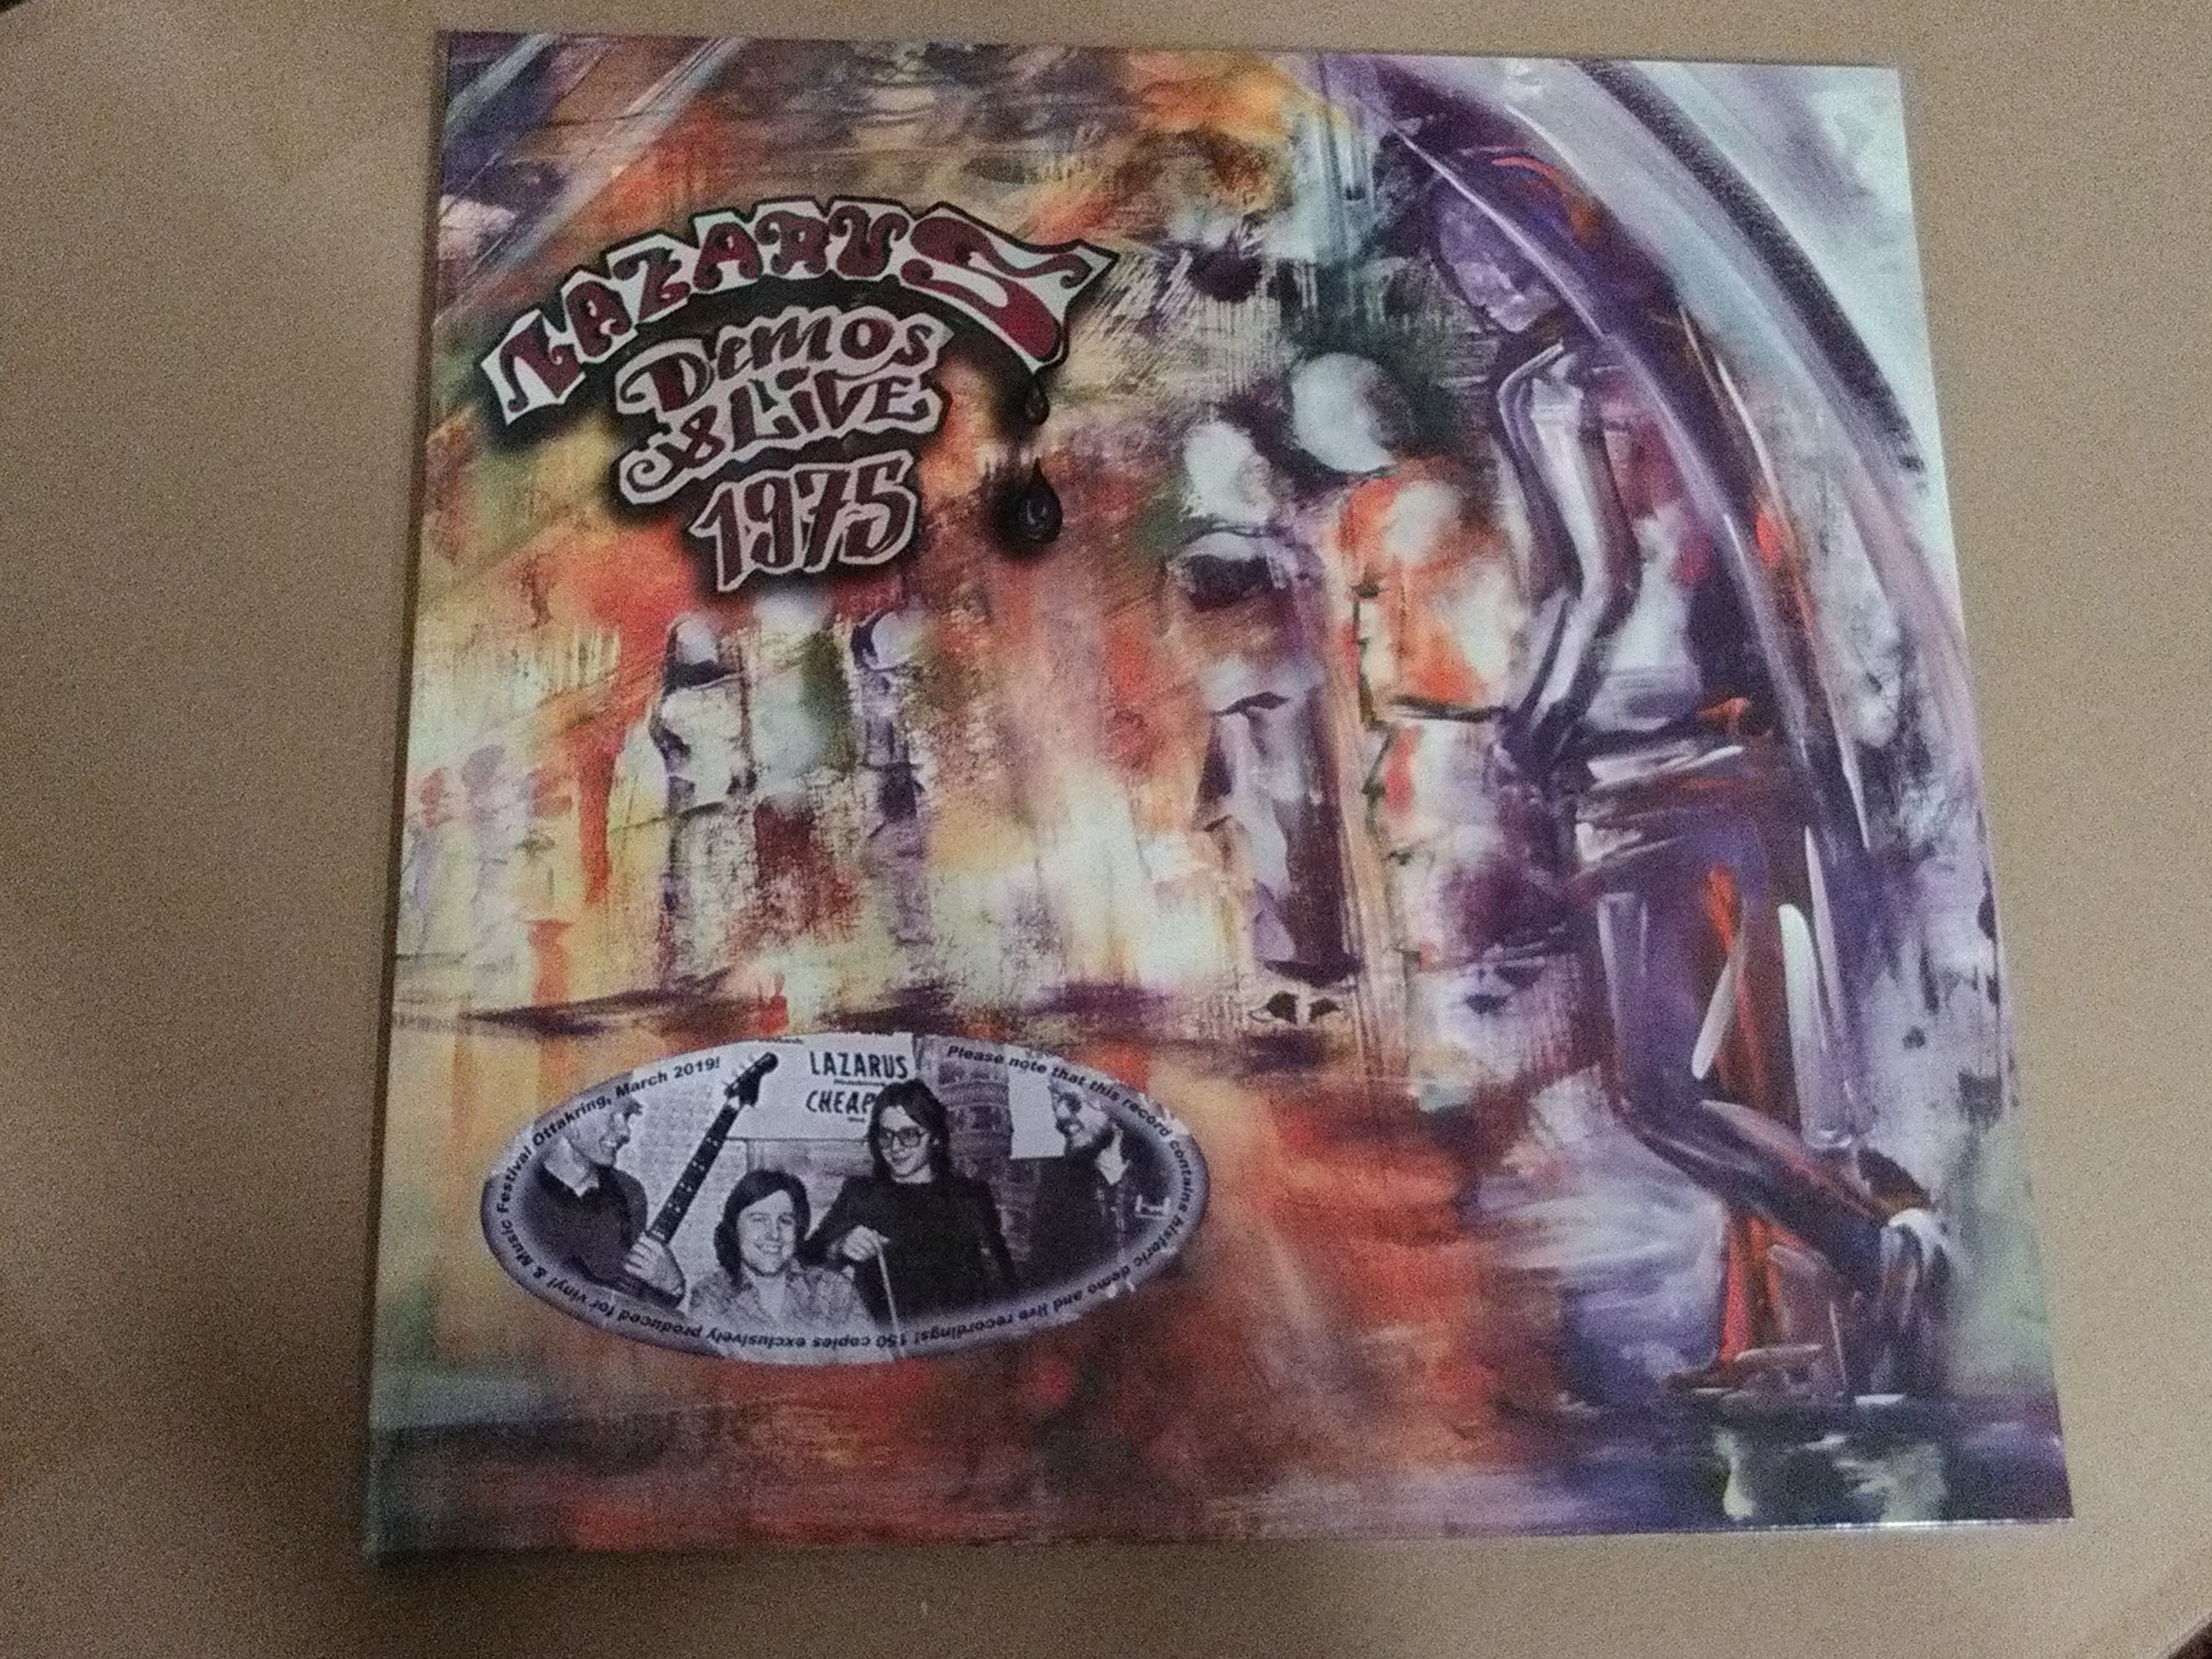 Lazarus – Demos & Live 1975 - Artist's Edition 2022 (Black Vinyl, White Label plus a Red Vinyl copy)